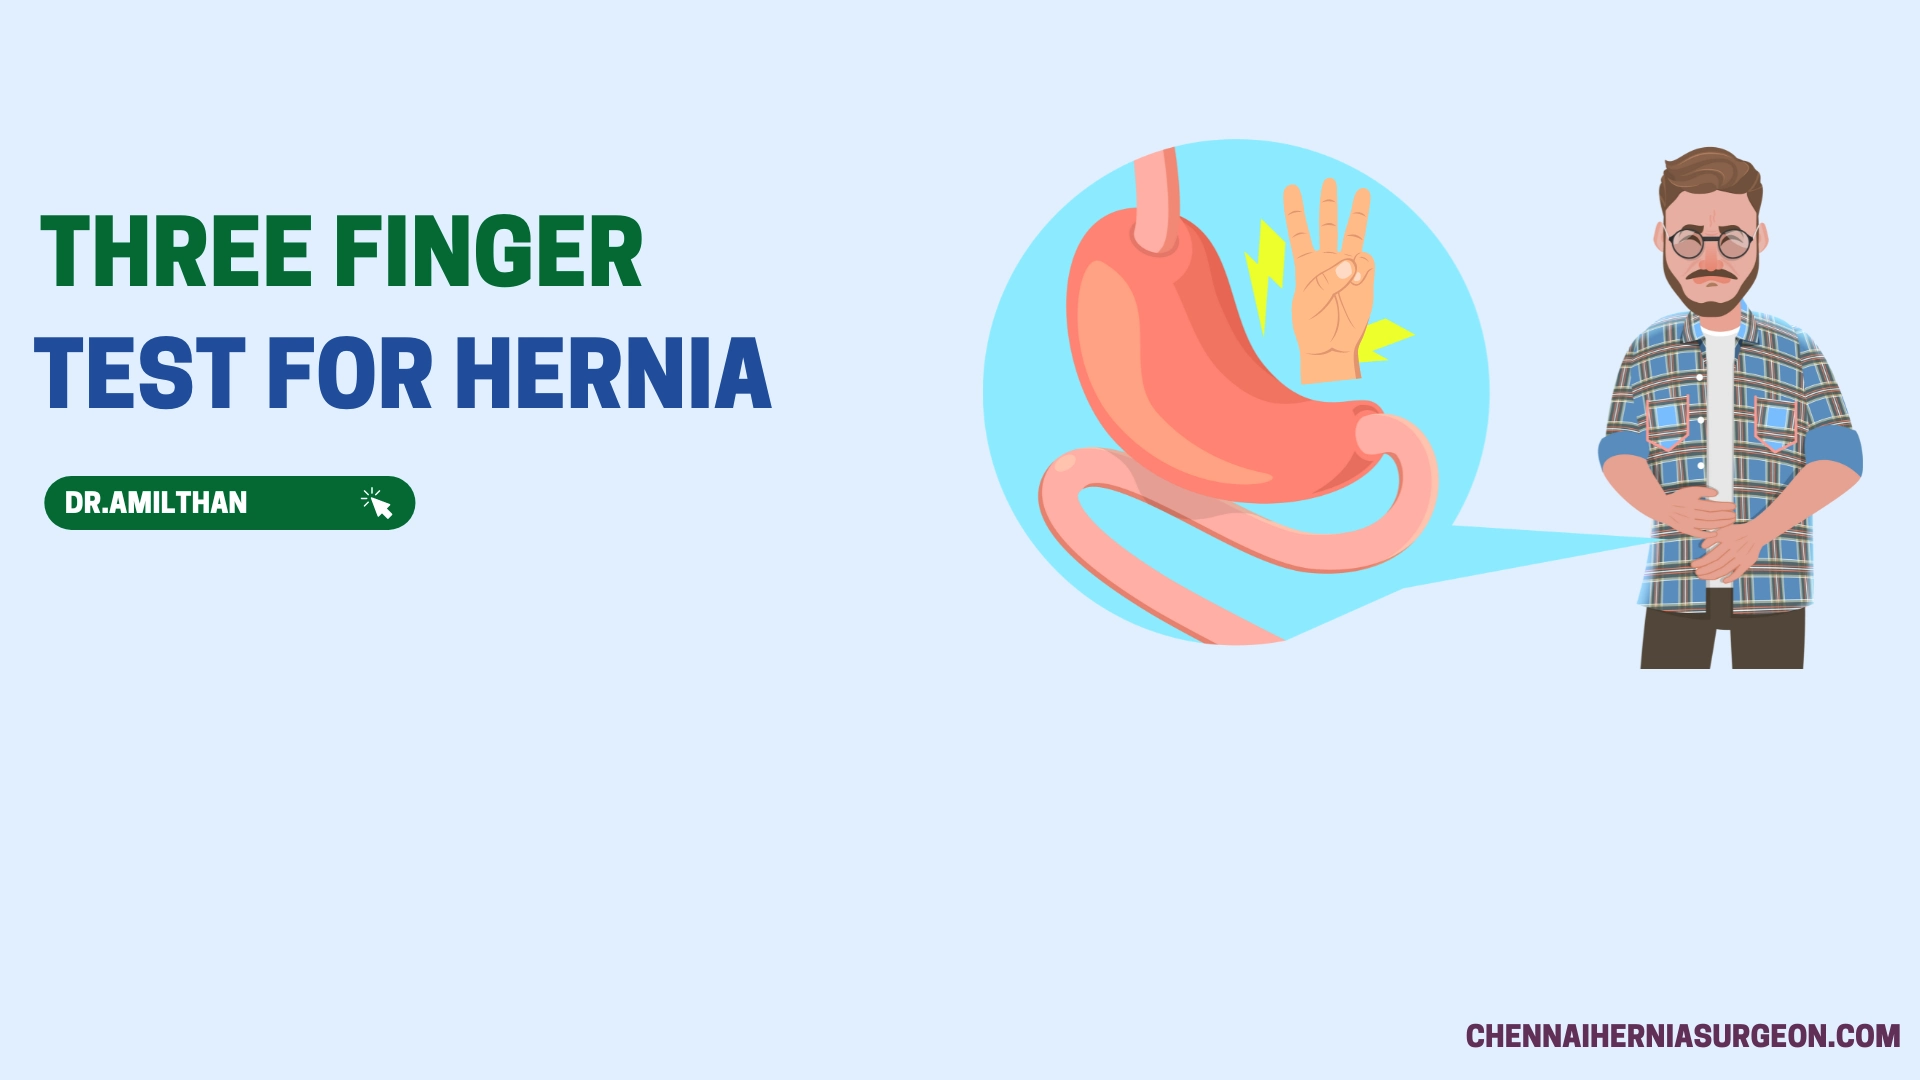 Three finger test for hernia